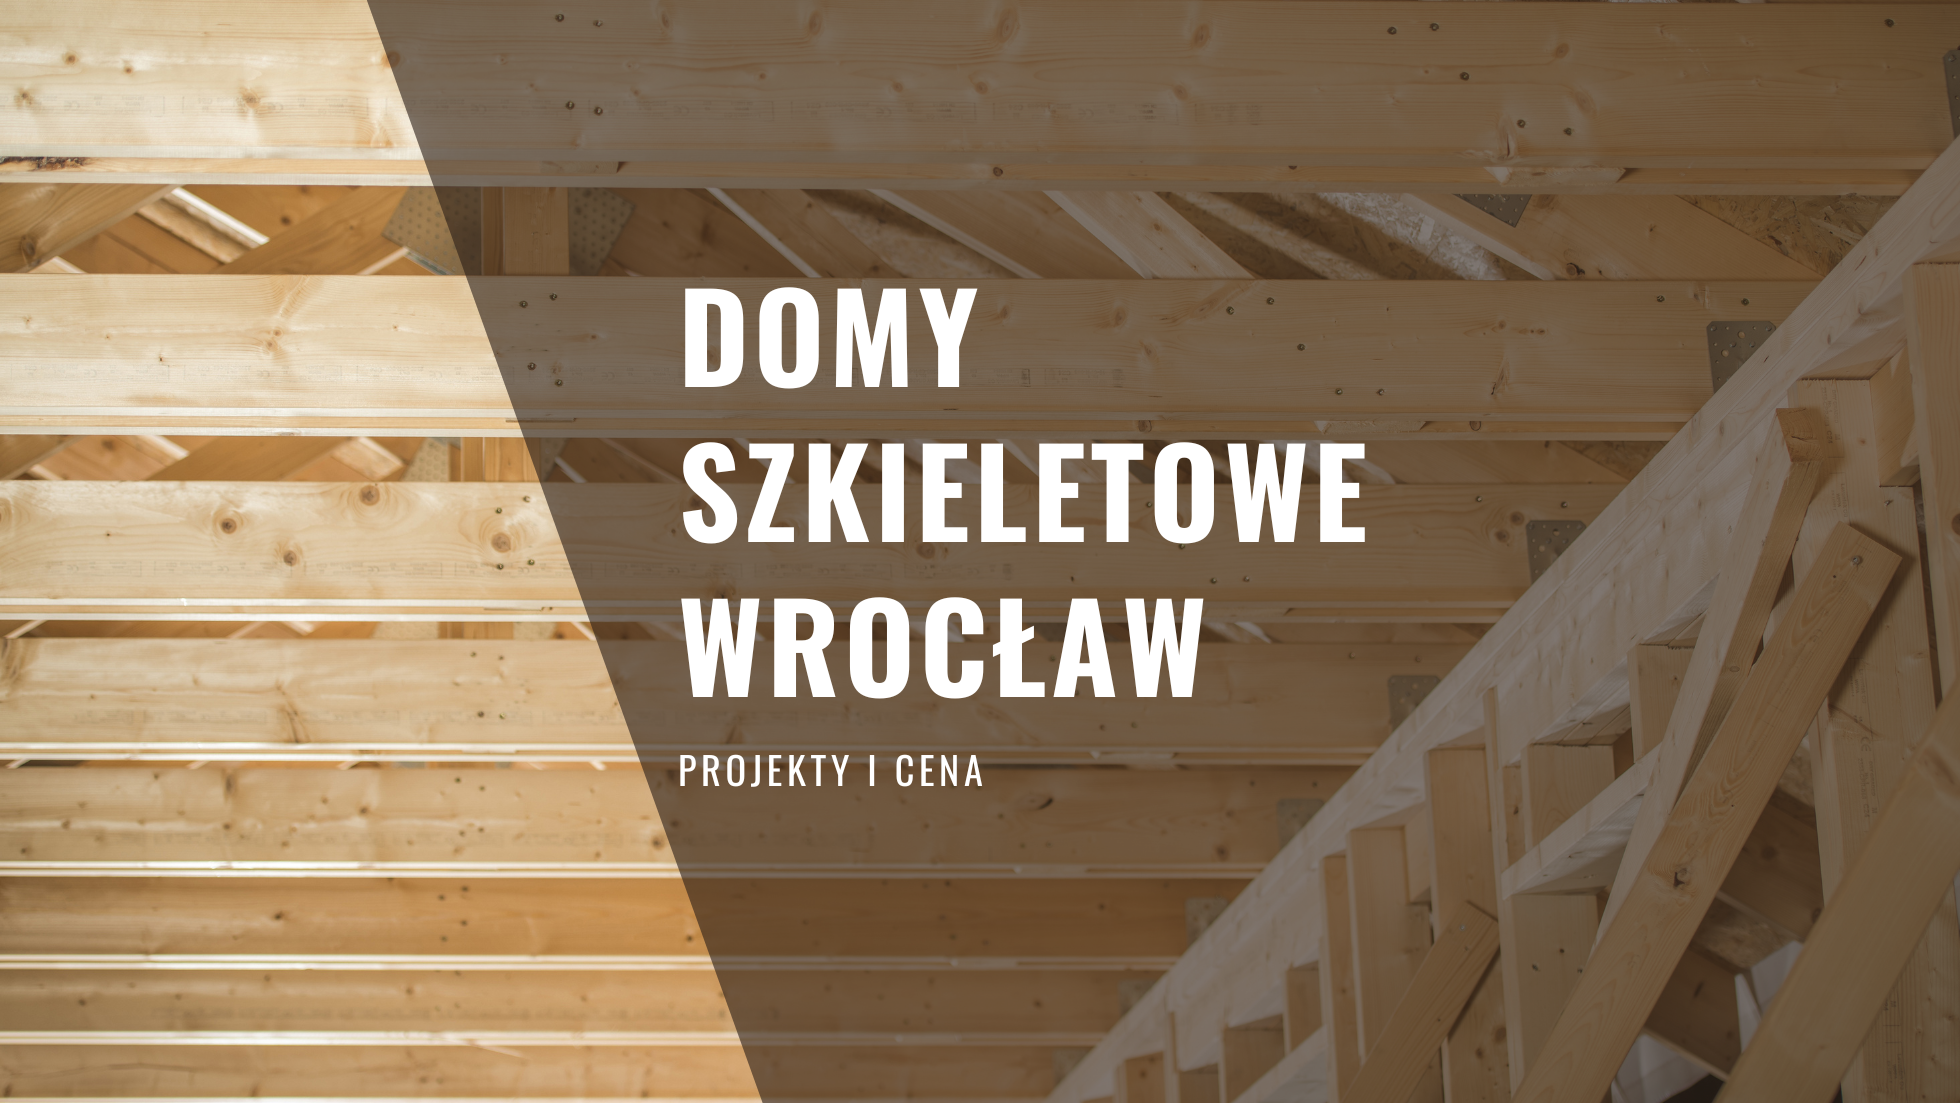 Domy szkieletowe Wrocław